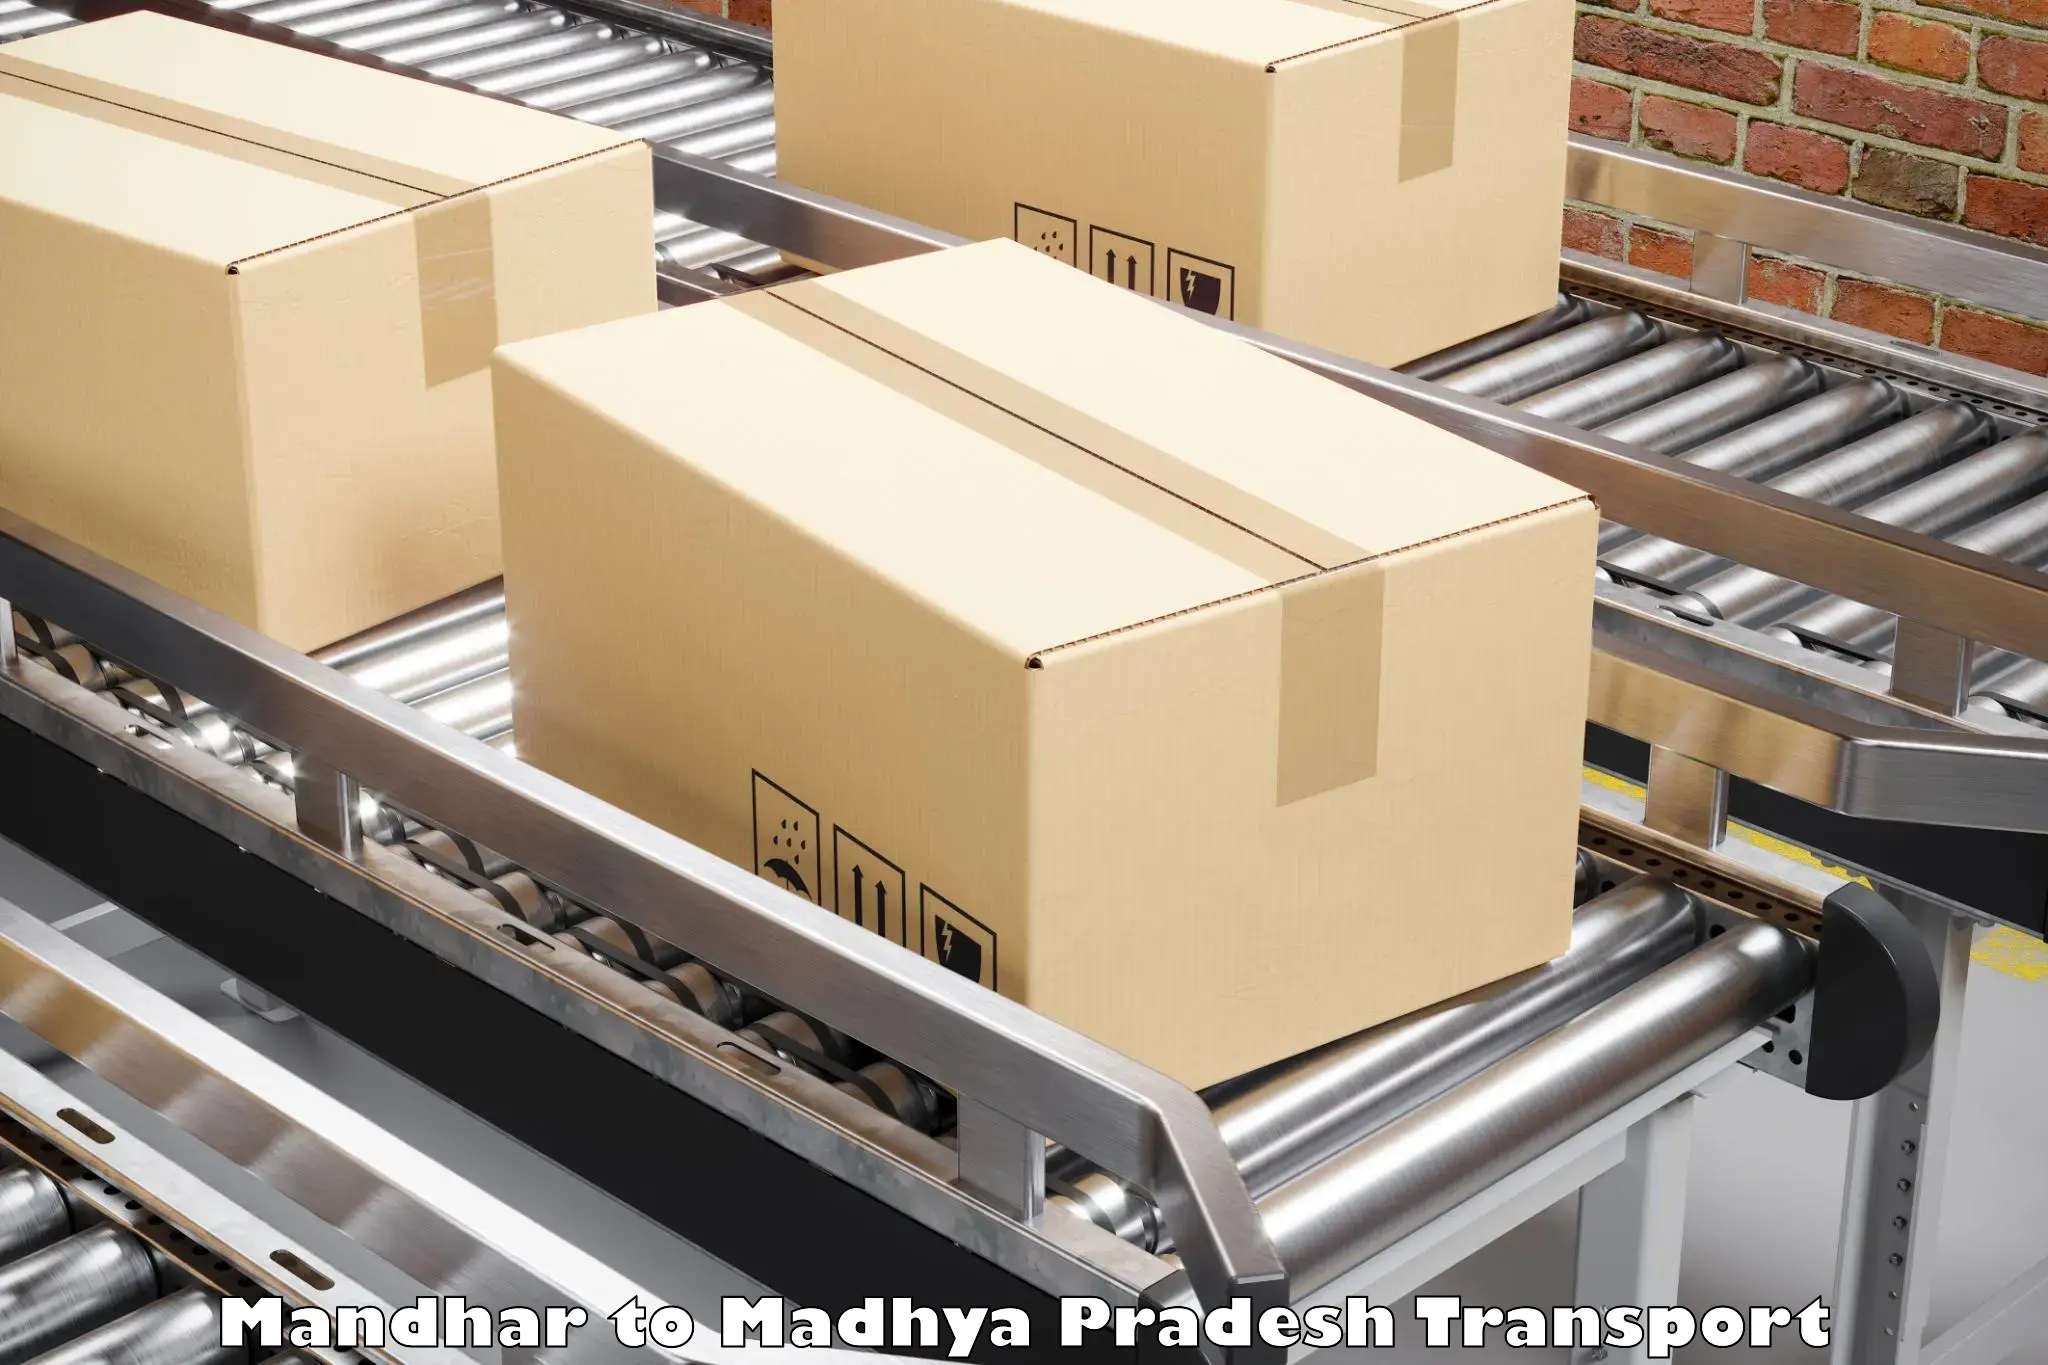 Pick up transport service Mandhar to Rajgarh